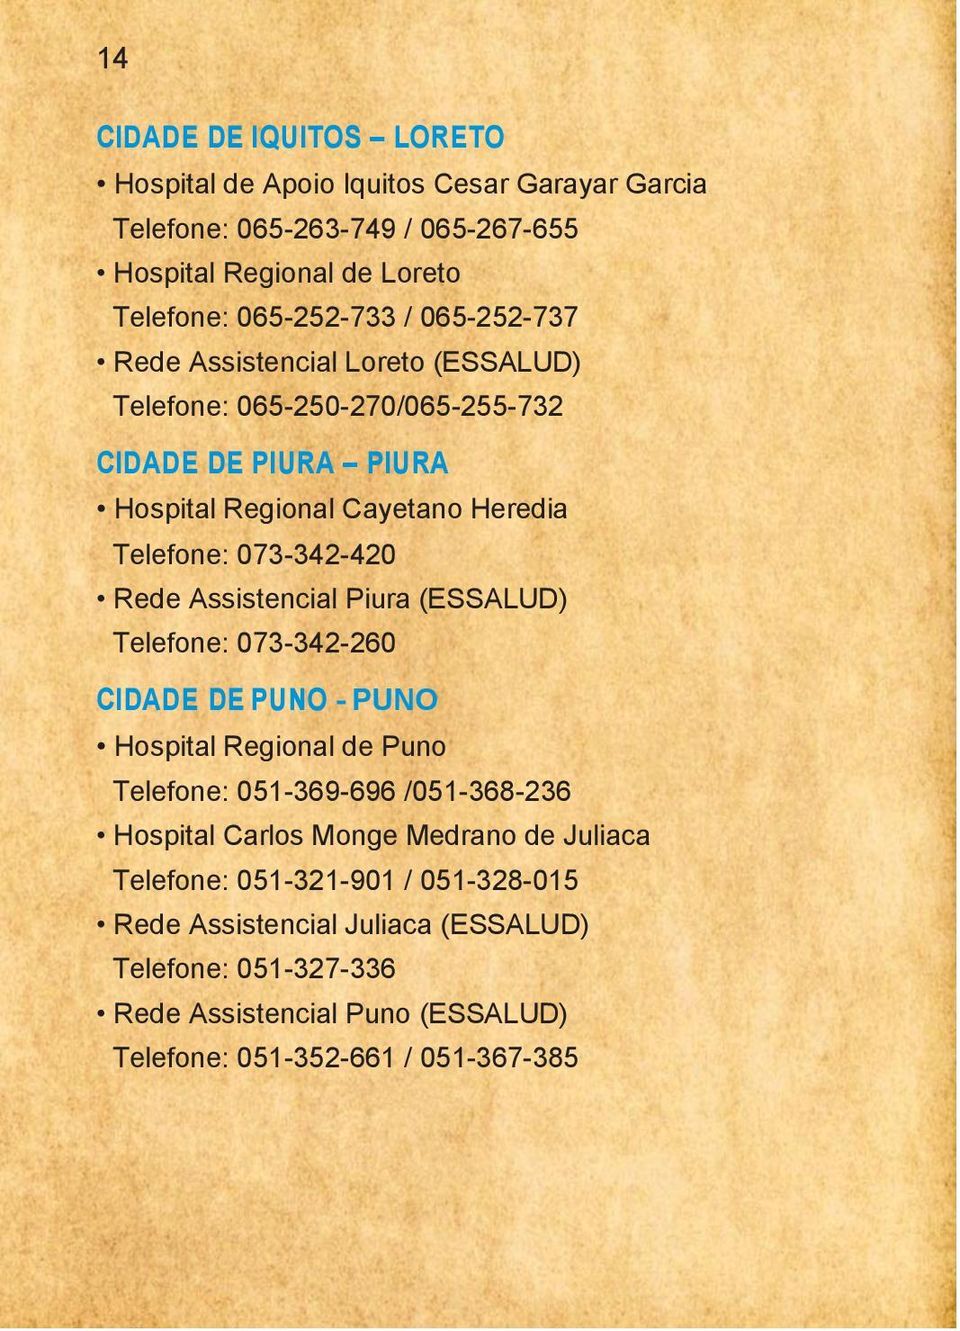 Assistencial Piura (ESSALUD) Telefone: 073-342-260 CIDADE DE PUNO - PUNO Hospital Regional de Puno Telefone: 051-369-696 /051-368-236 Hospital Carlos Monge Medrano de